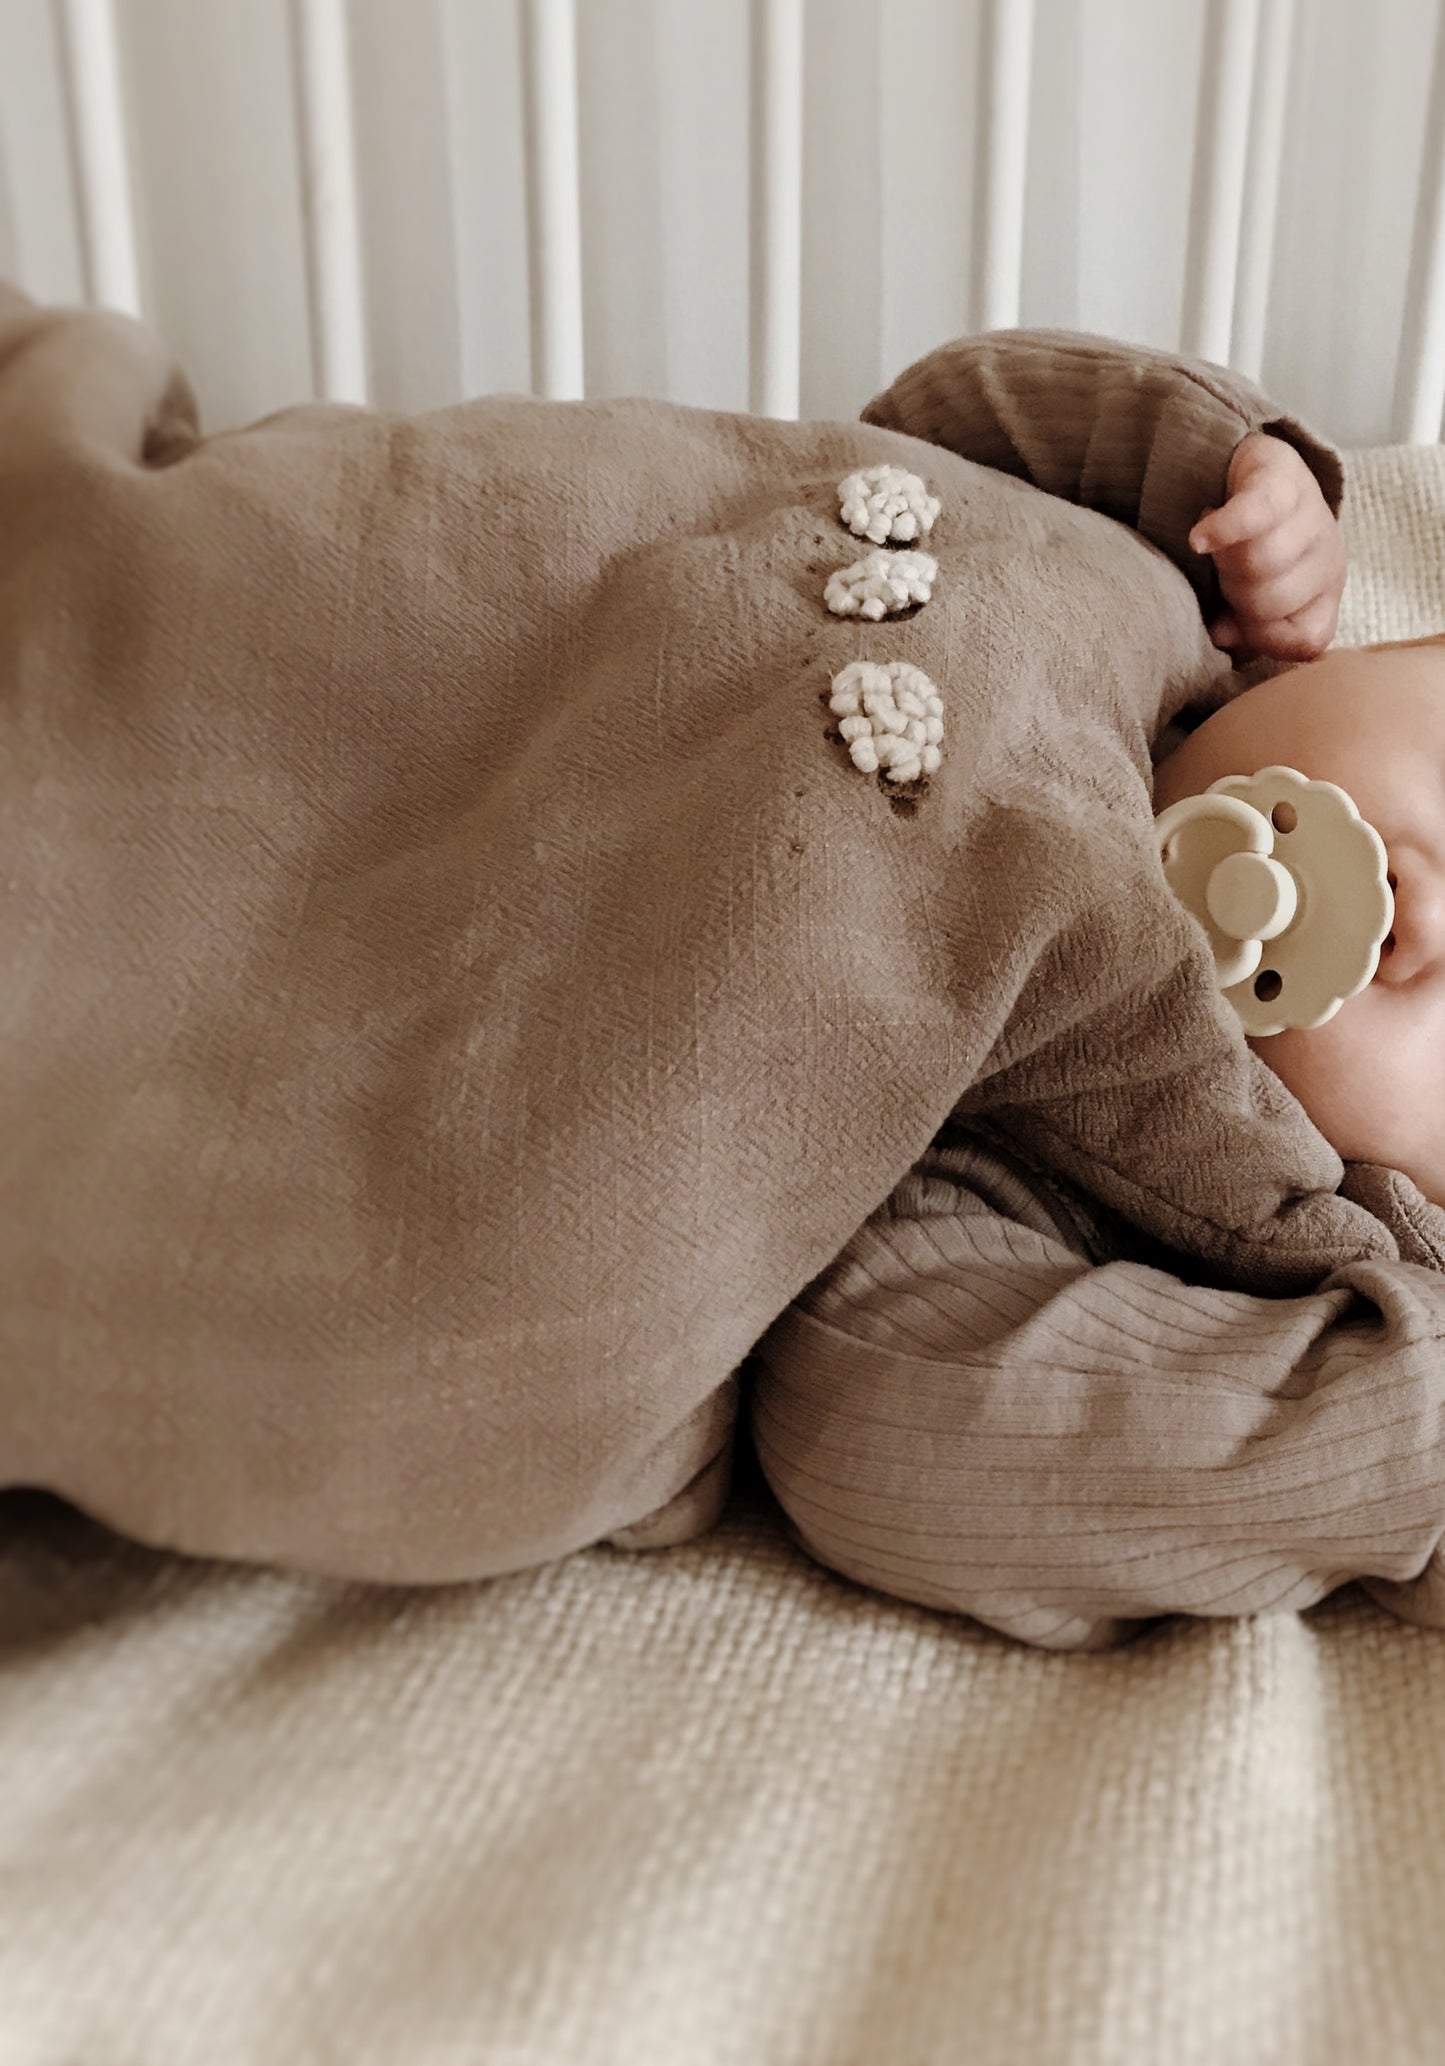 Lniany Zakątek – śpiworek niemowlęcy Toupe / różne rozmiary